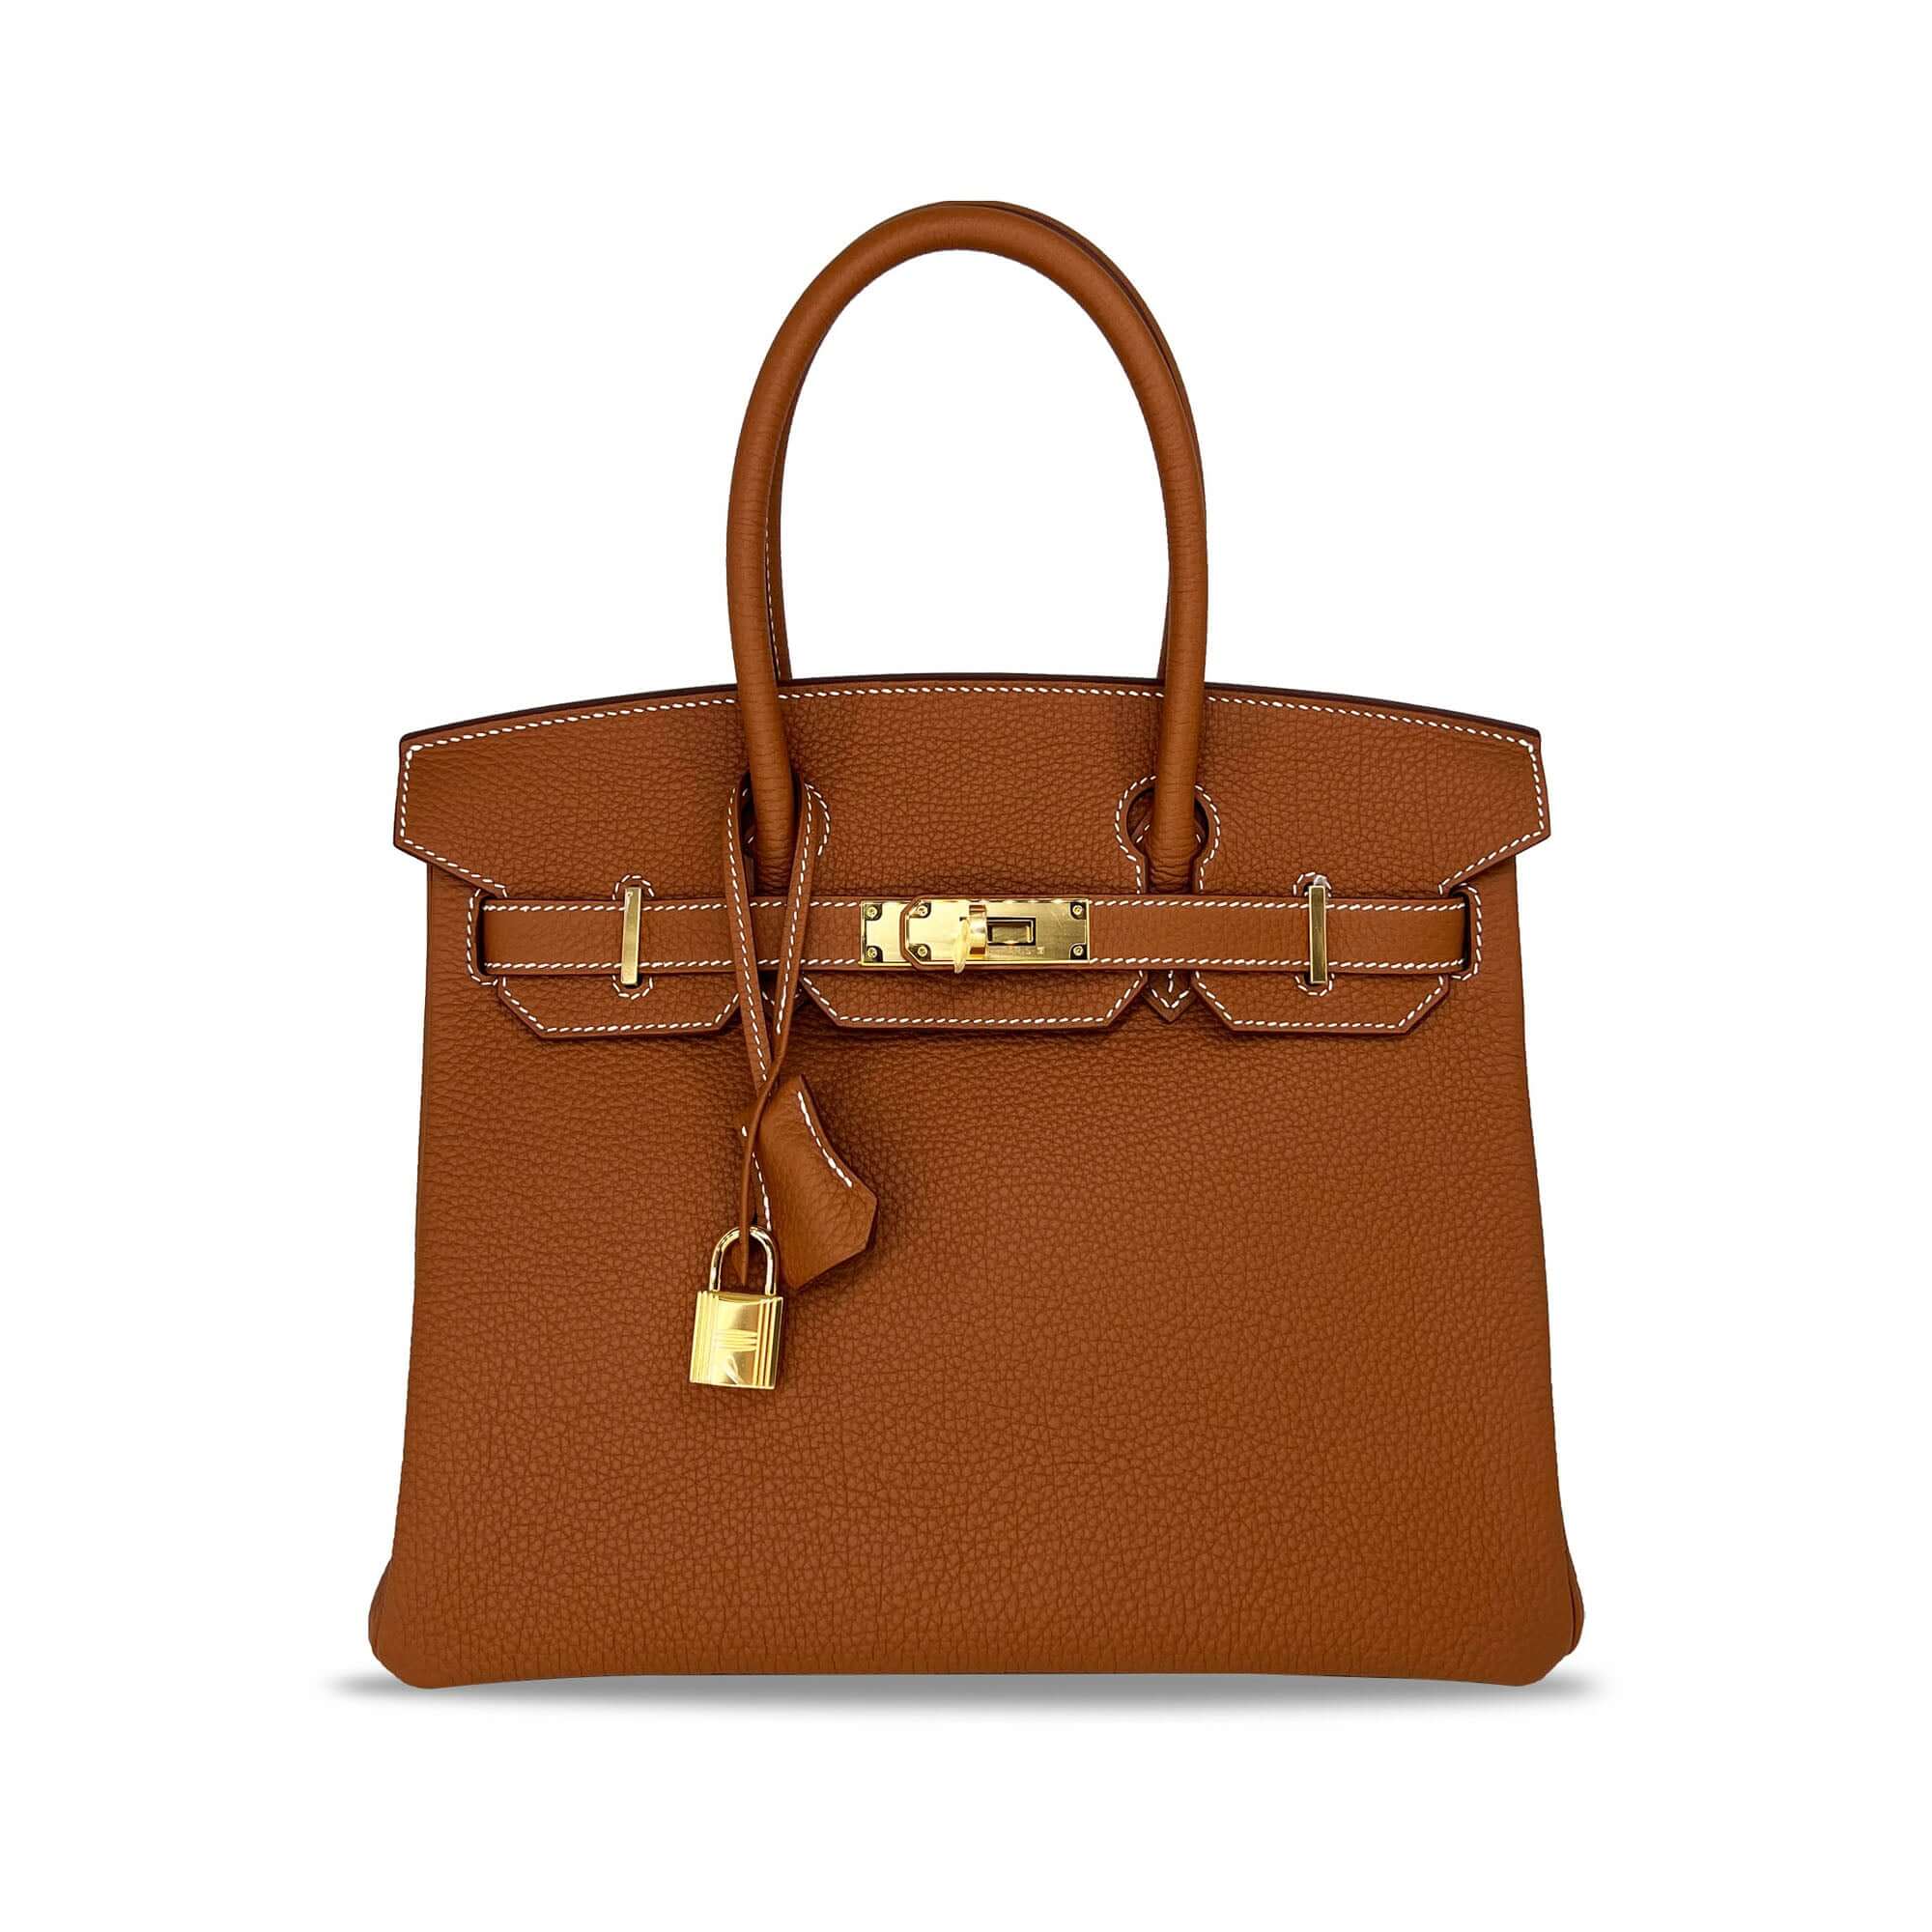 Top Quality brown Hermes Birkin Togo B30 GHW designer bag